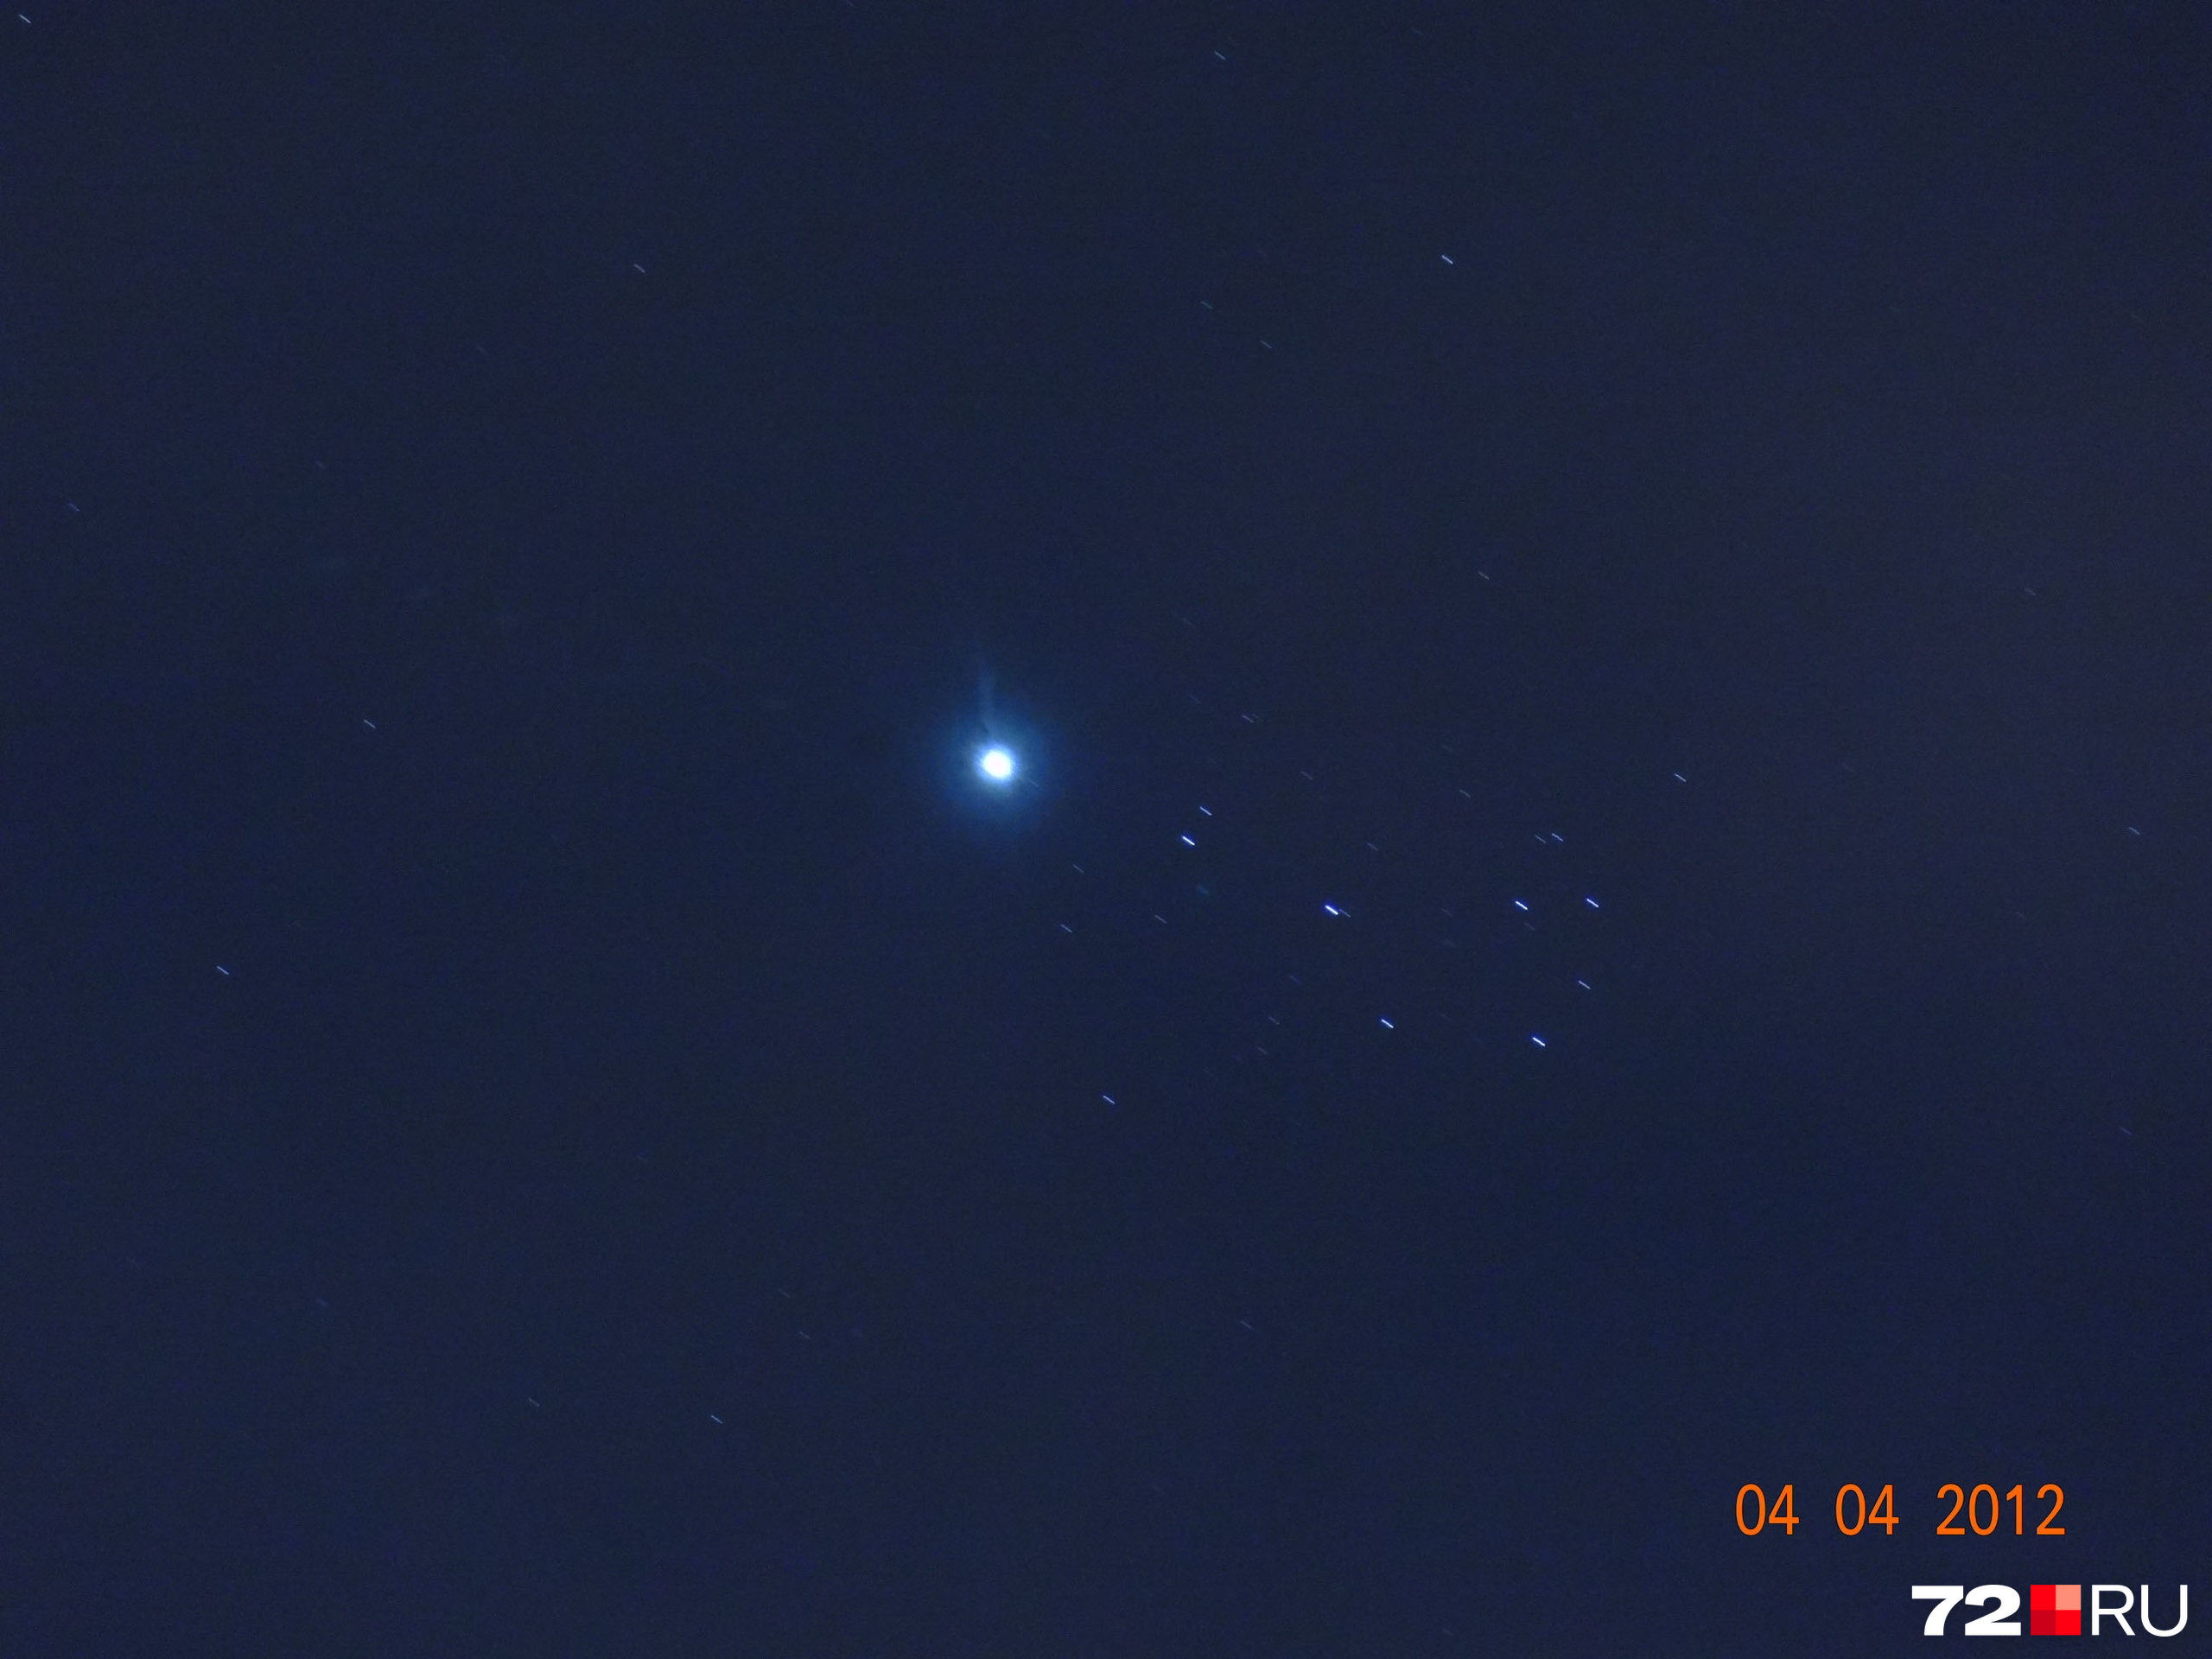 Фигура из семи звезд в форме маленького ковшика — это и есть Плеяды. Это явление было снято восемь лет назад с камеры с приближением х16